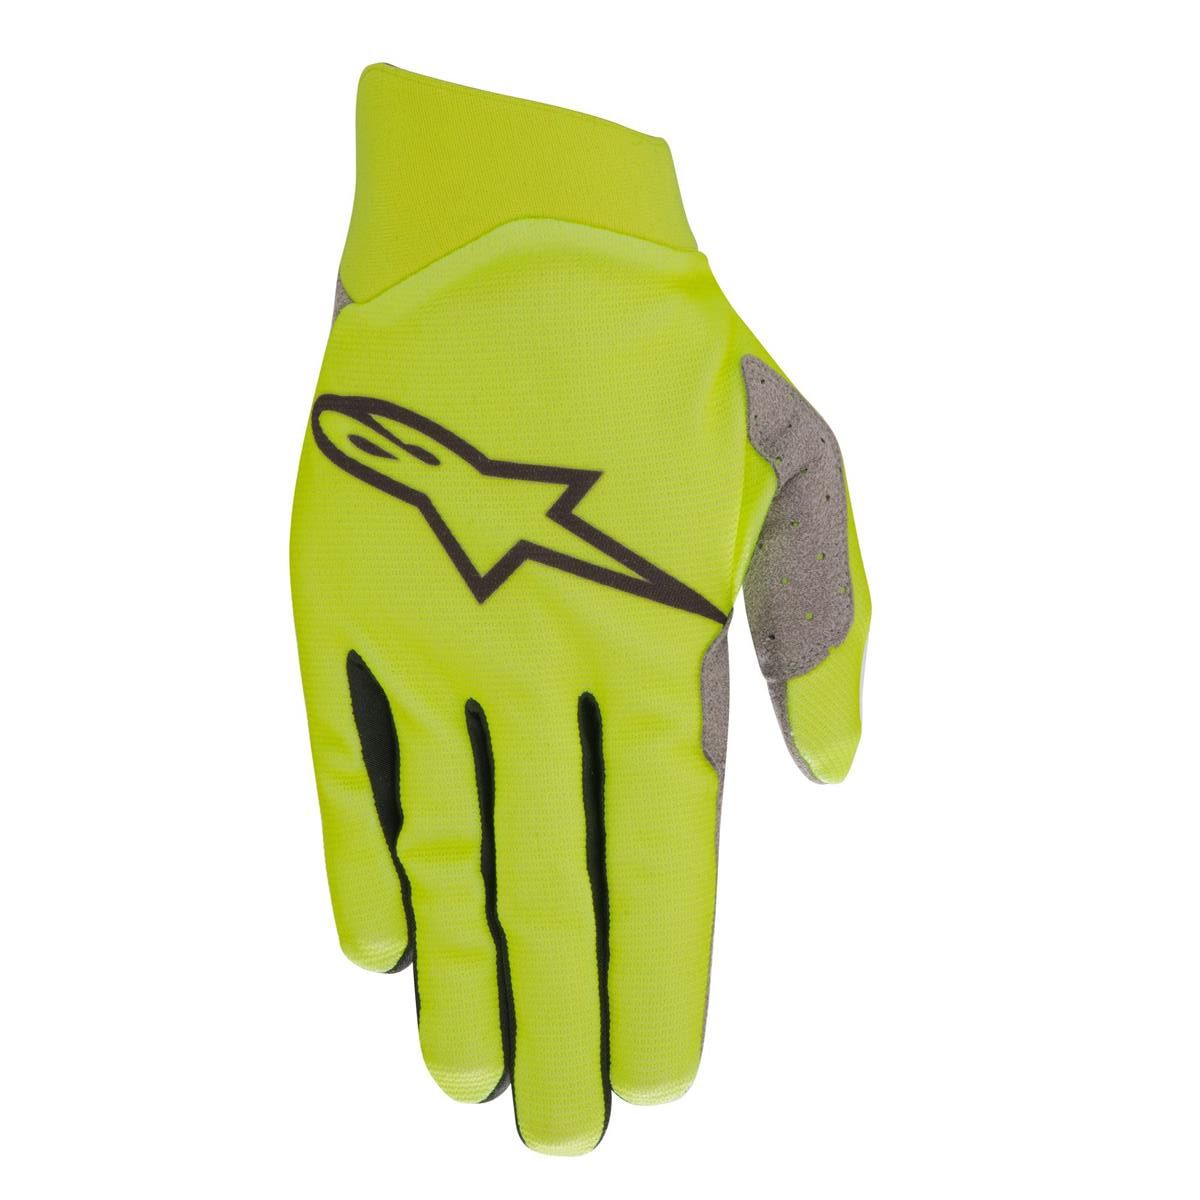 Alpinestars Gloves Dune Yellow Fluo